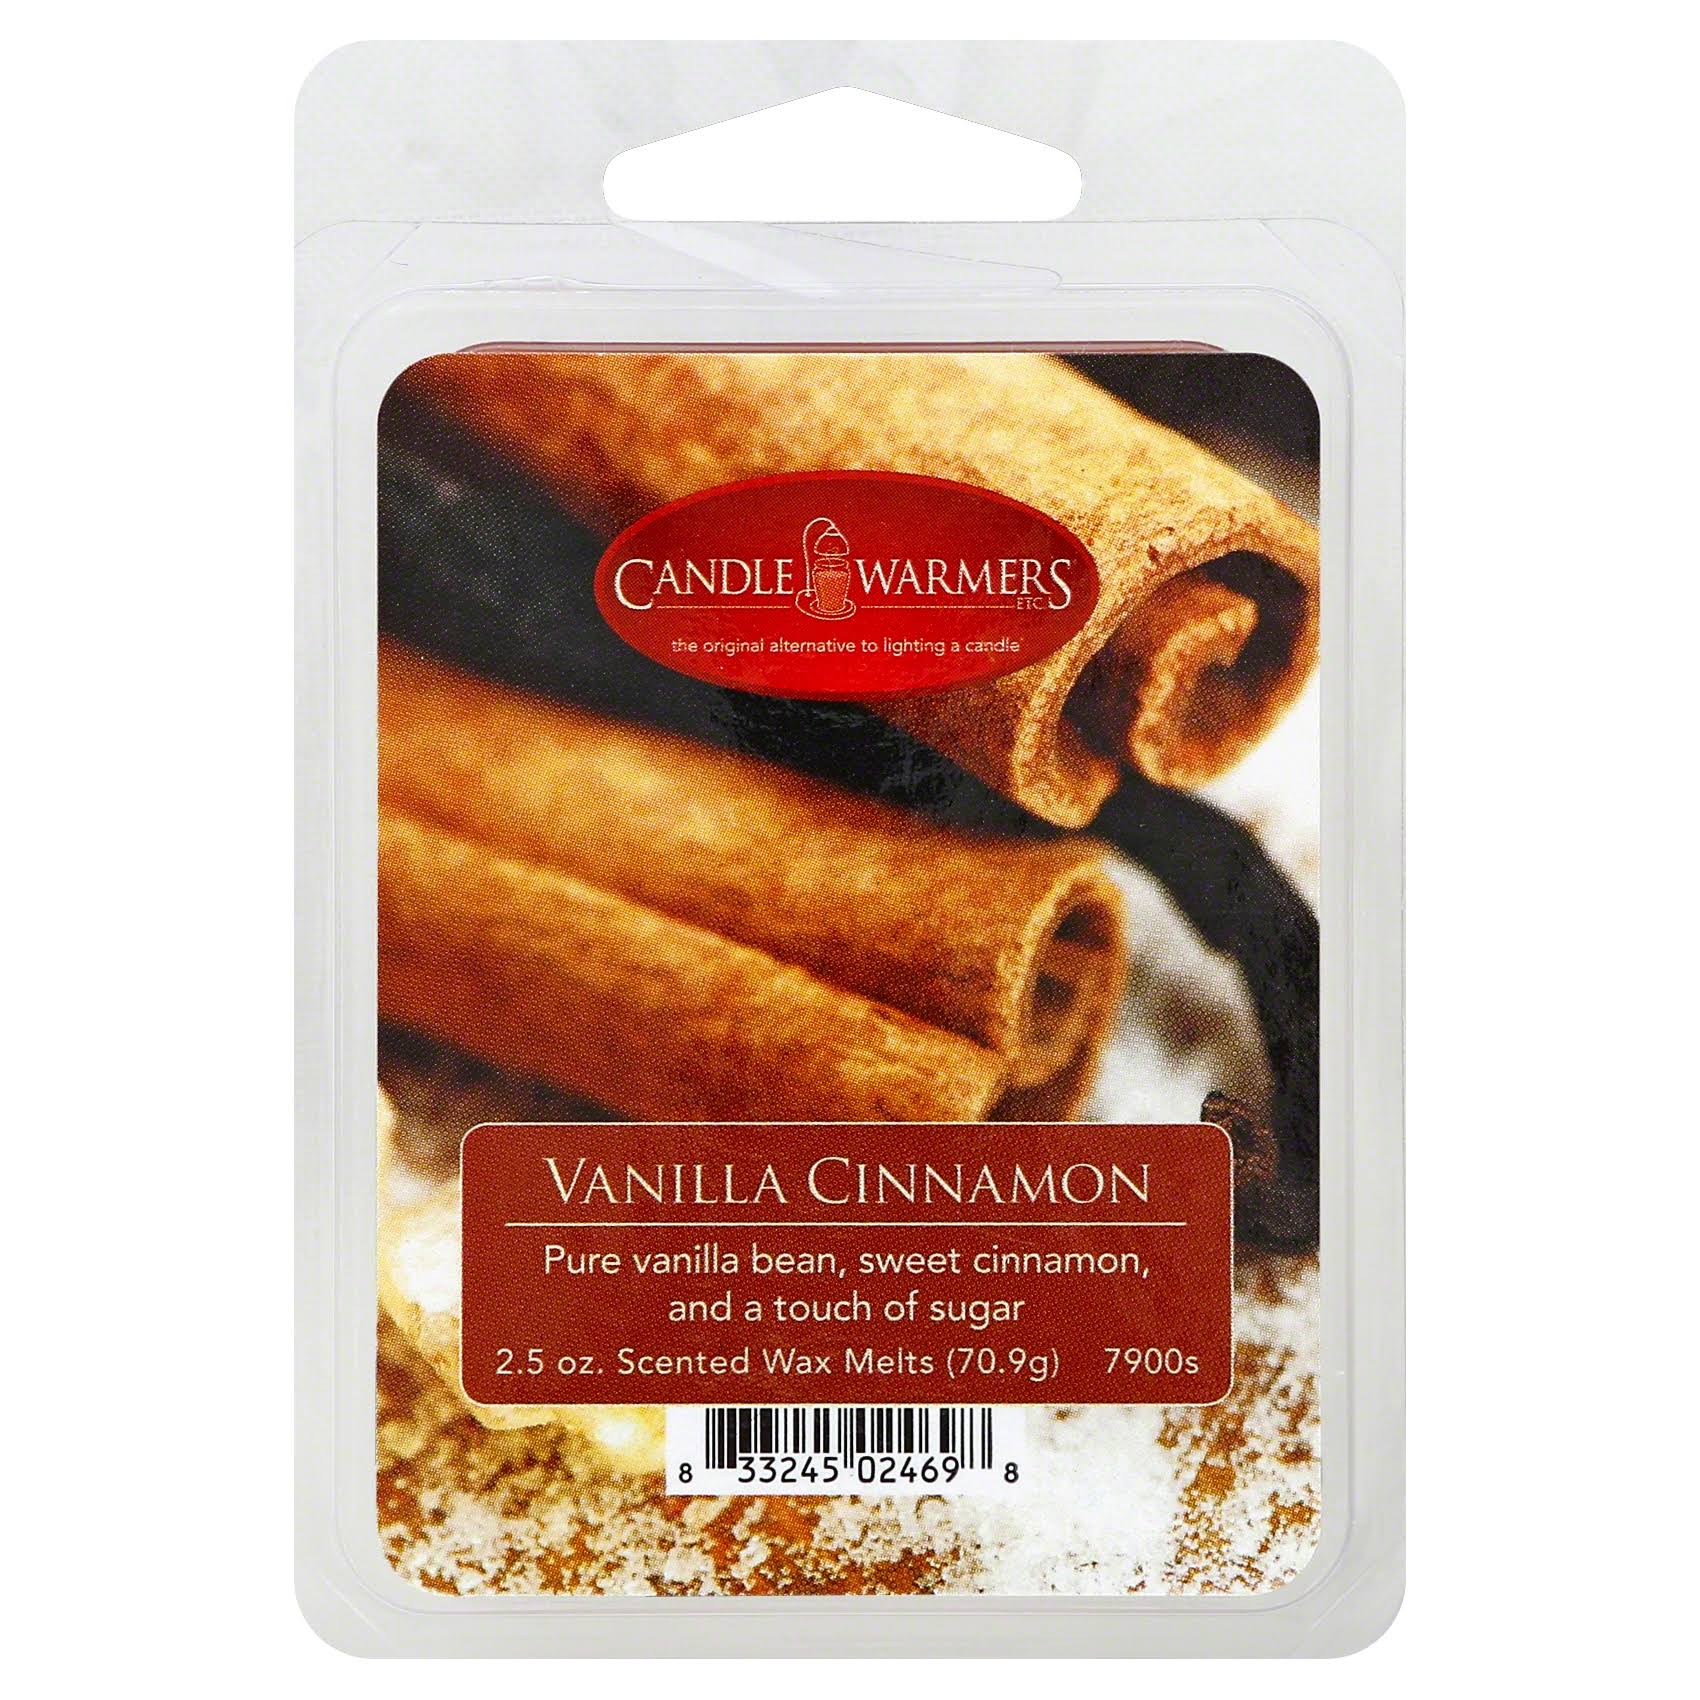 Candle Warmers Wax Melts - Vanilla Cinnamon